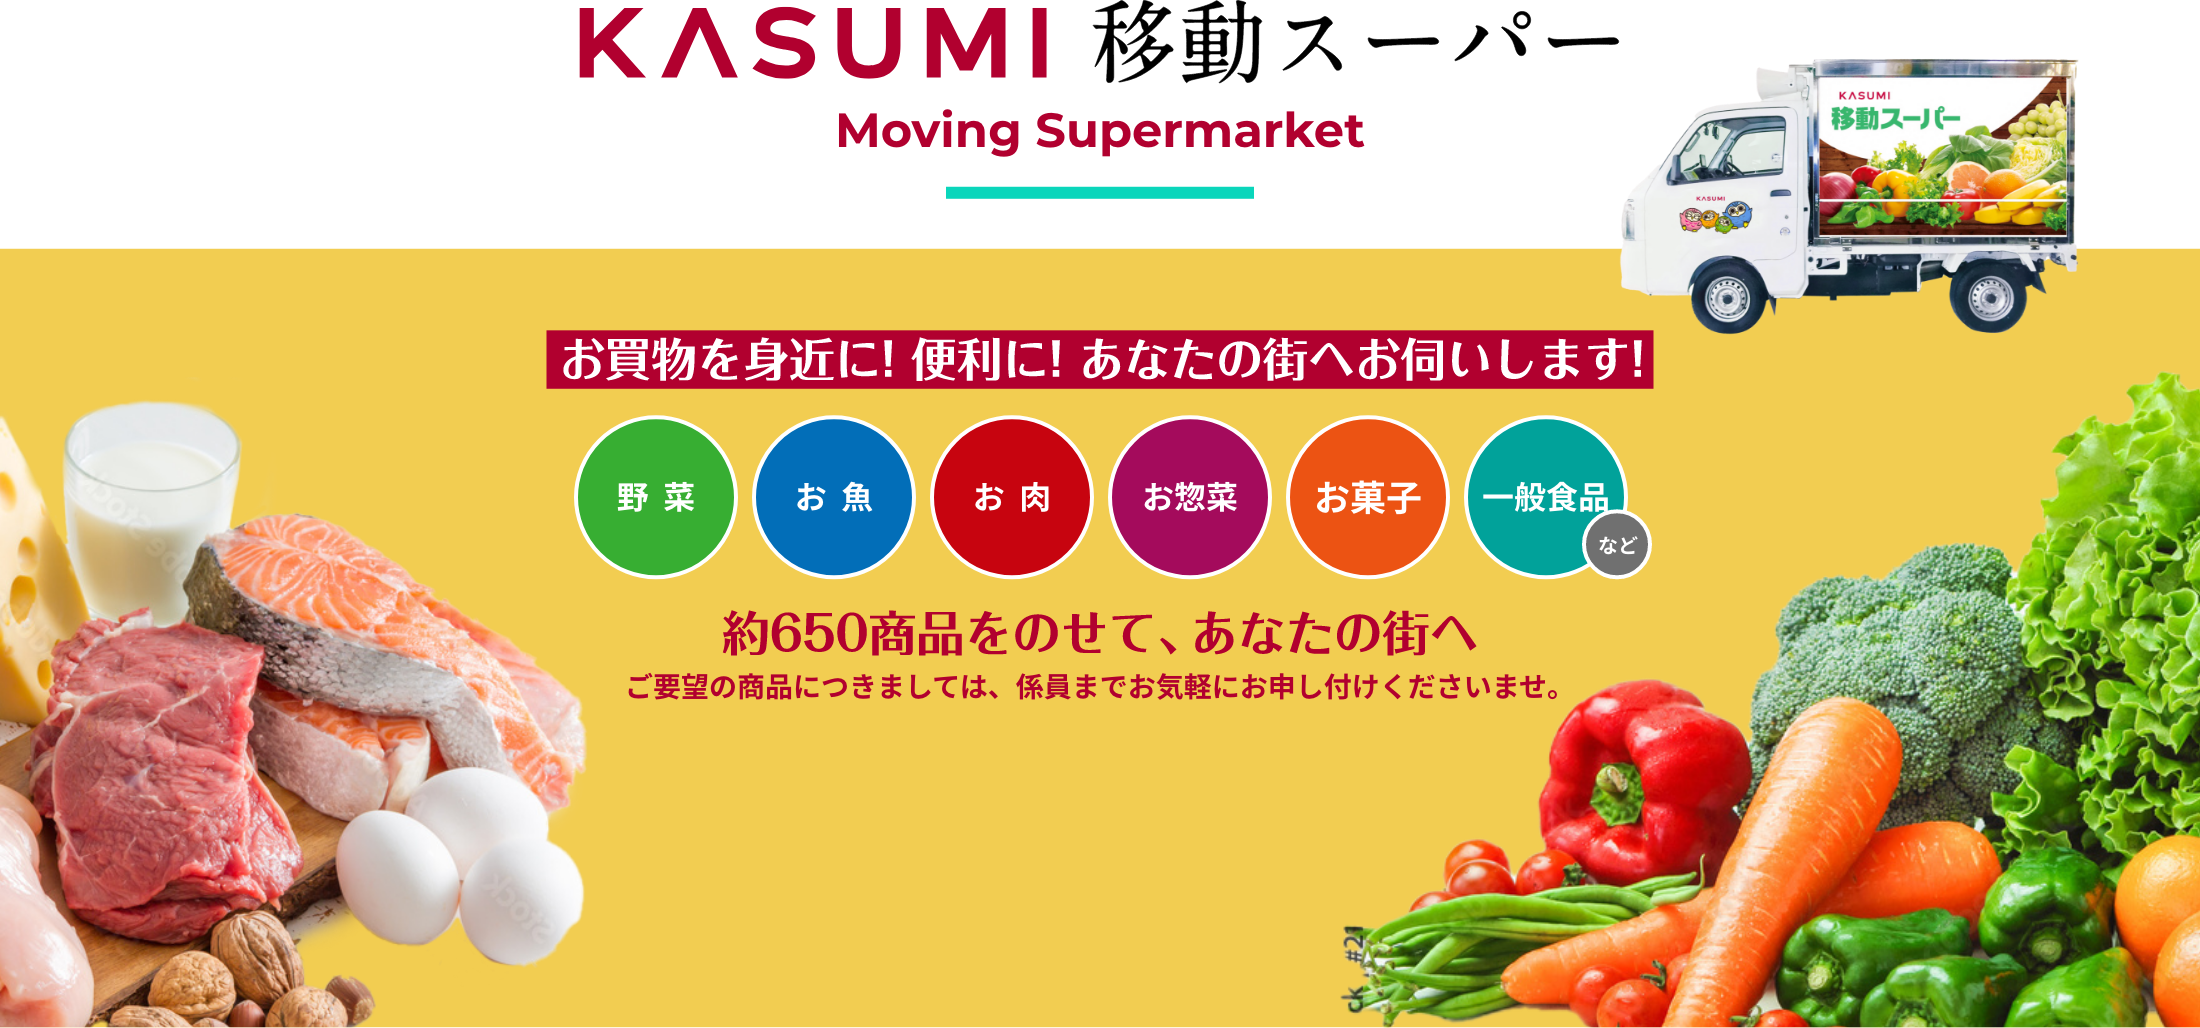 KASUMI 移動スーパー Moving Supermarket お買い物を身近に！便利に！あなたの街へお伺いします！ 野菜 お魚 お肉 お惣菜 お菓子 一般食品など 約650商品をのせて、あなたの街へ ご要望の商品につきましては、係員までお気軽にお申し付けくださいませ。